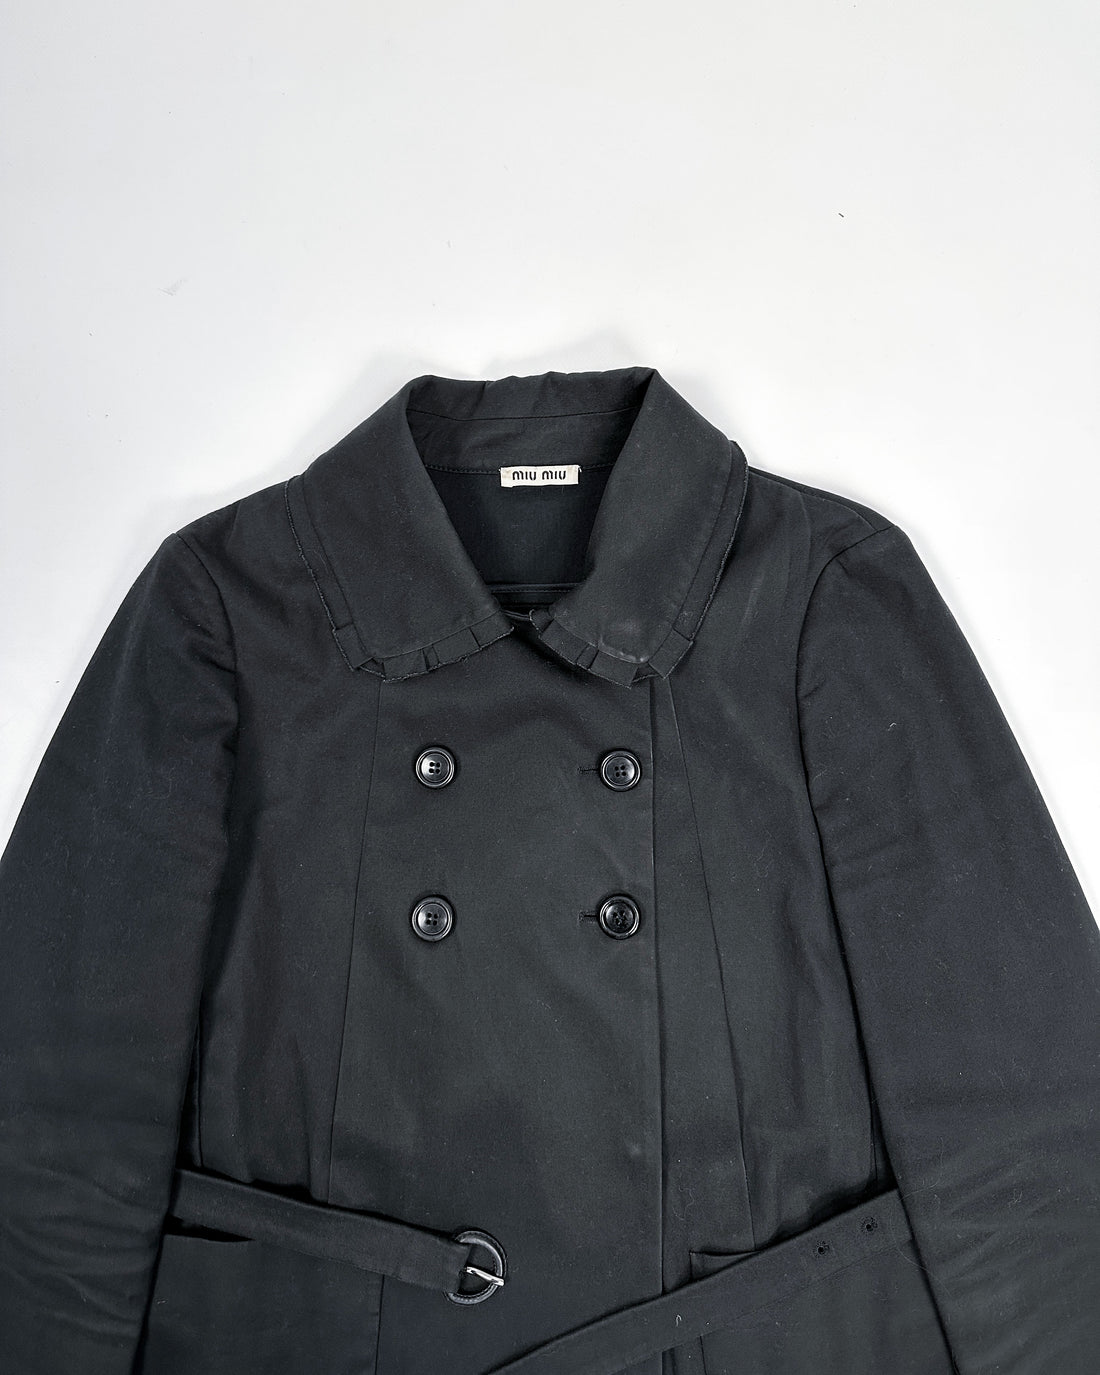 Miu Miu Black Short Trench Coat 2000's